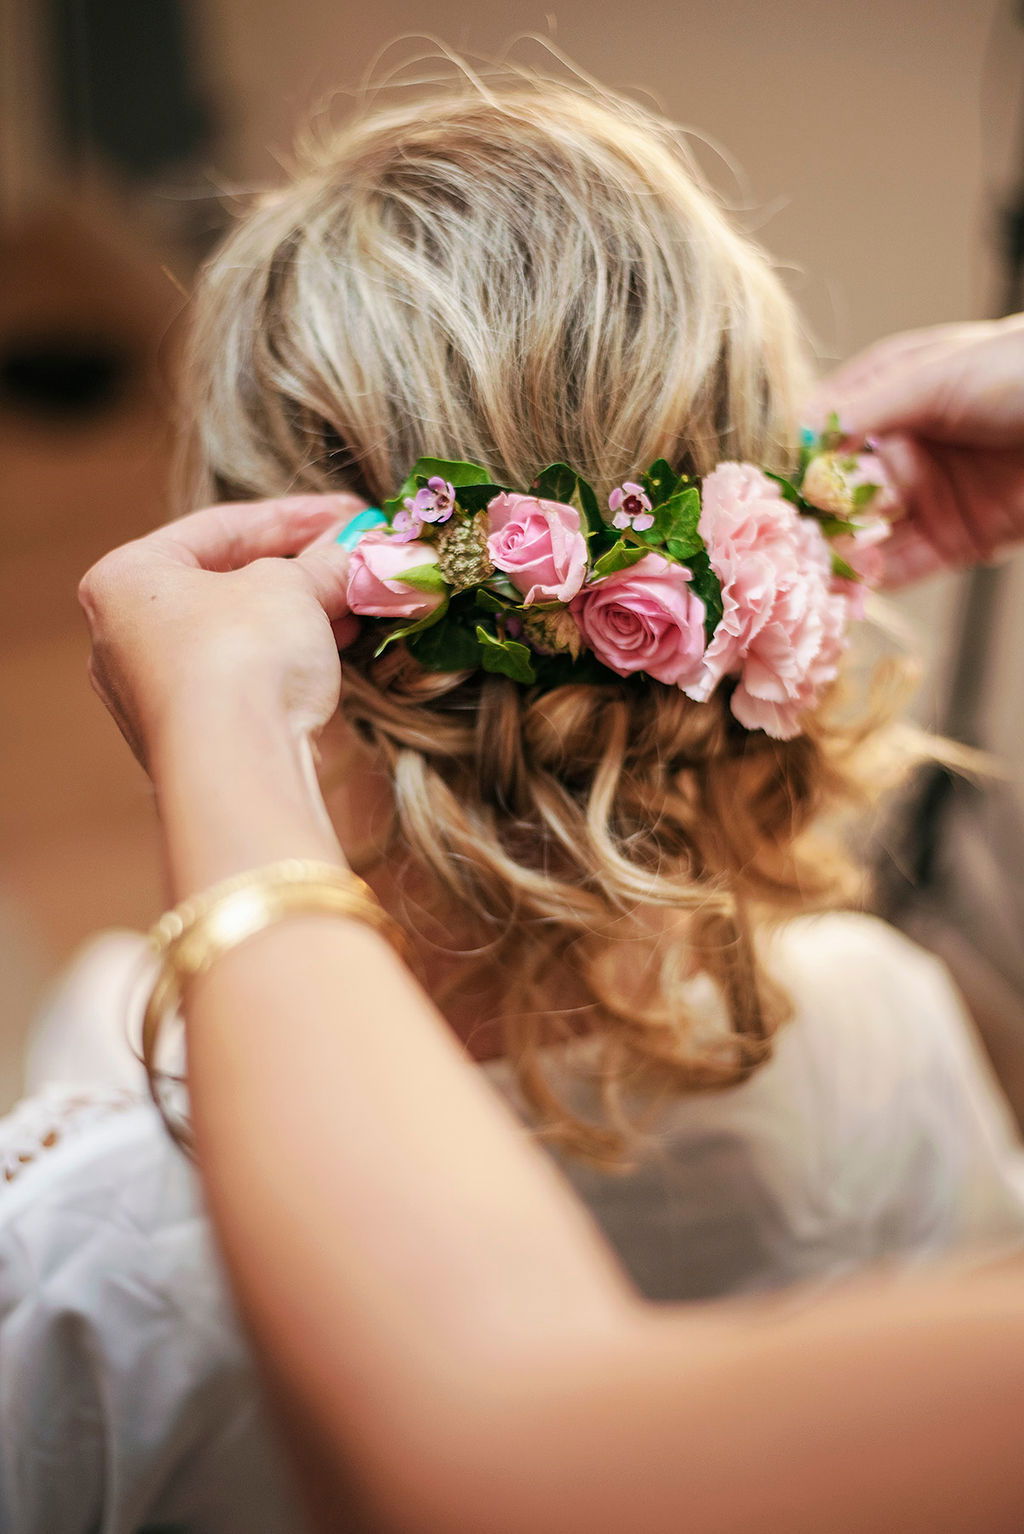 Coiffure mariage chignon bas chic et romantique avec demi couronne de fleurs roses